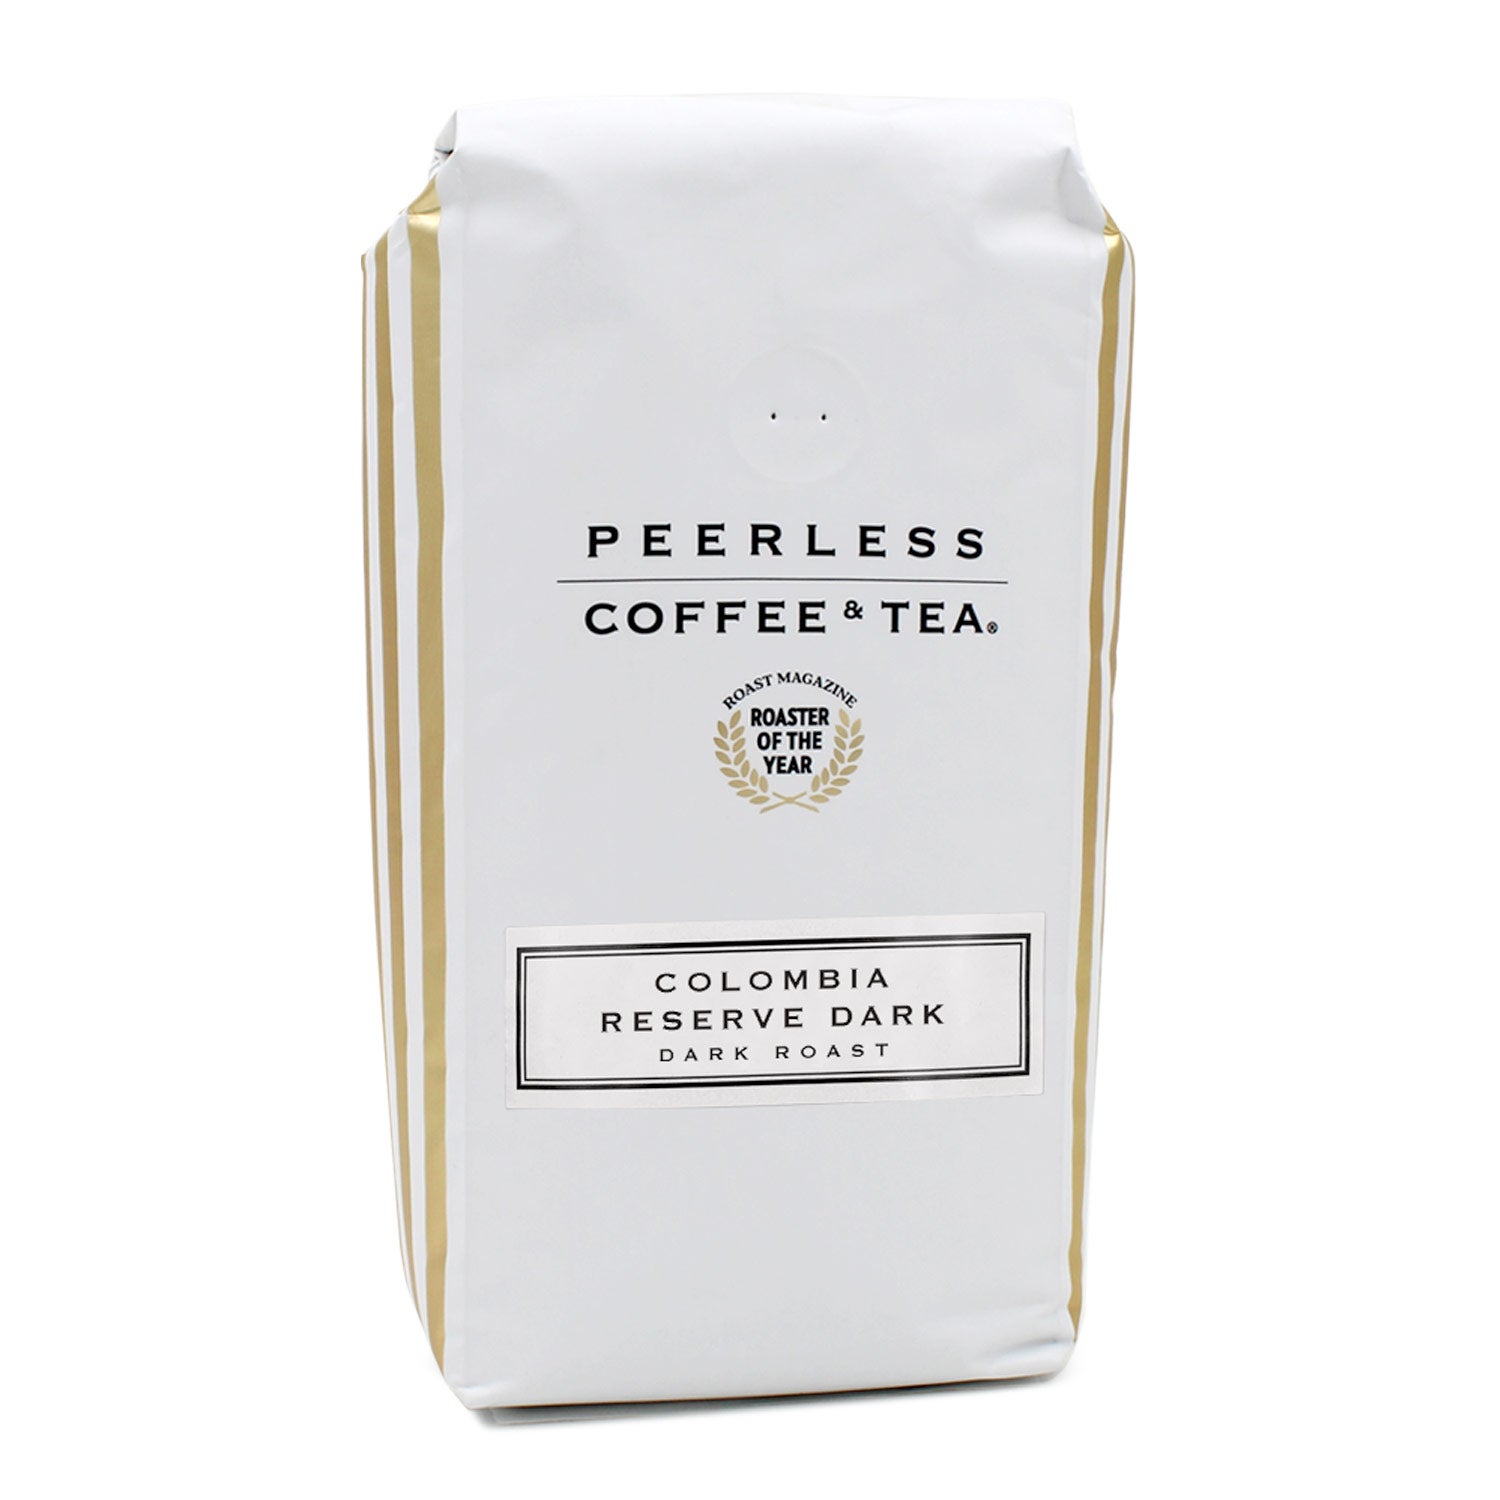 Peerless Colombia Reserve Dark Coffee, 1 Lb.